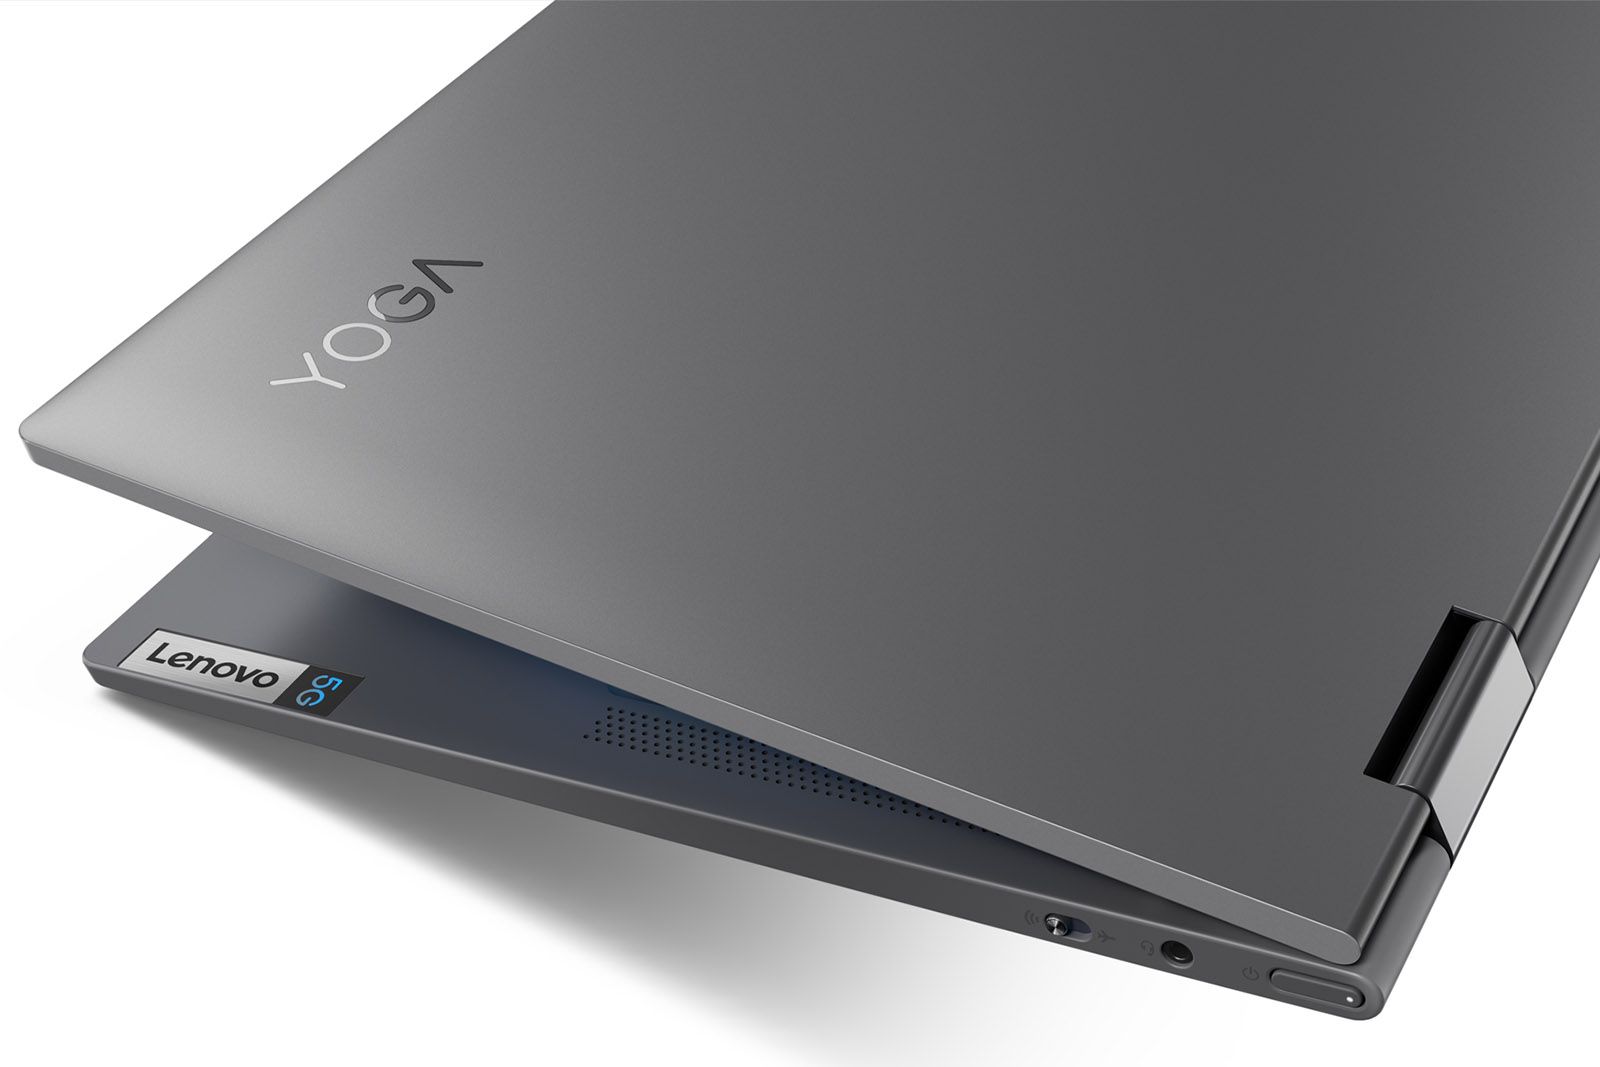 Lenovo Yoga 5G image 1